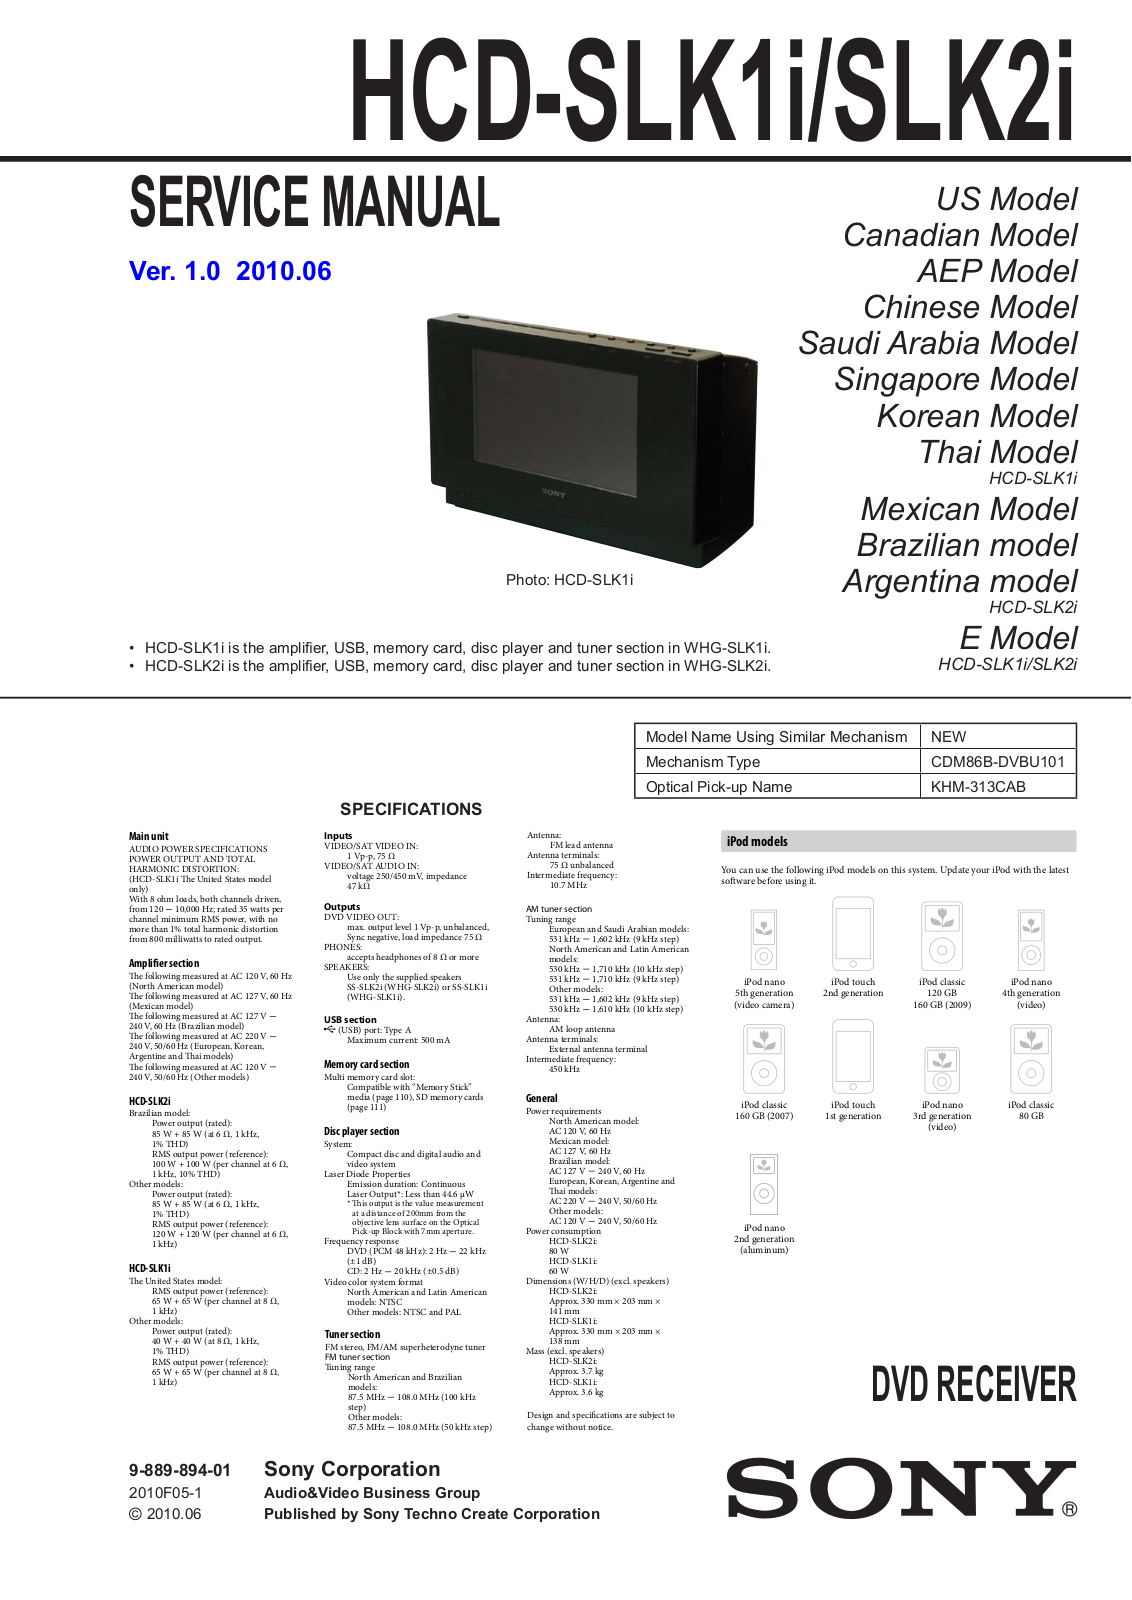 Sony HCDSLK-1-I, HCDSLK-2-I Service manual